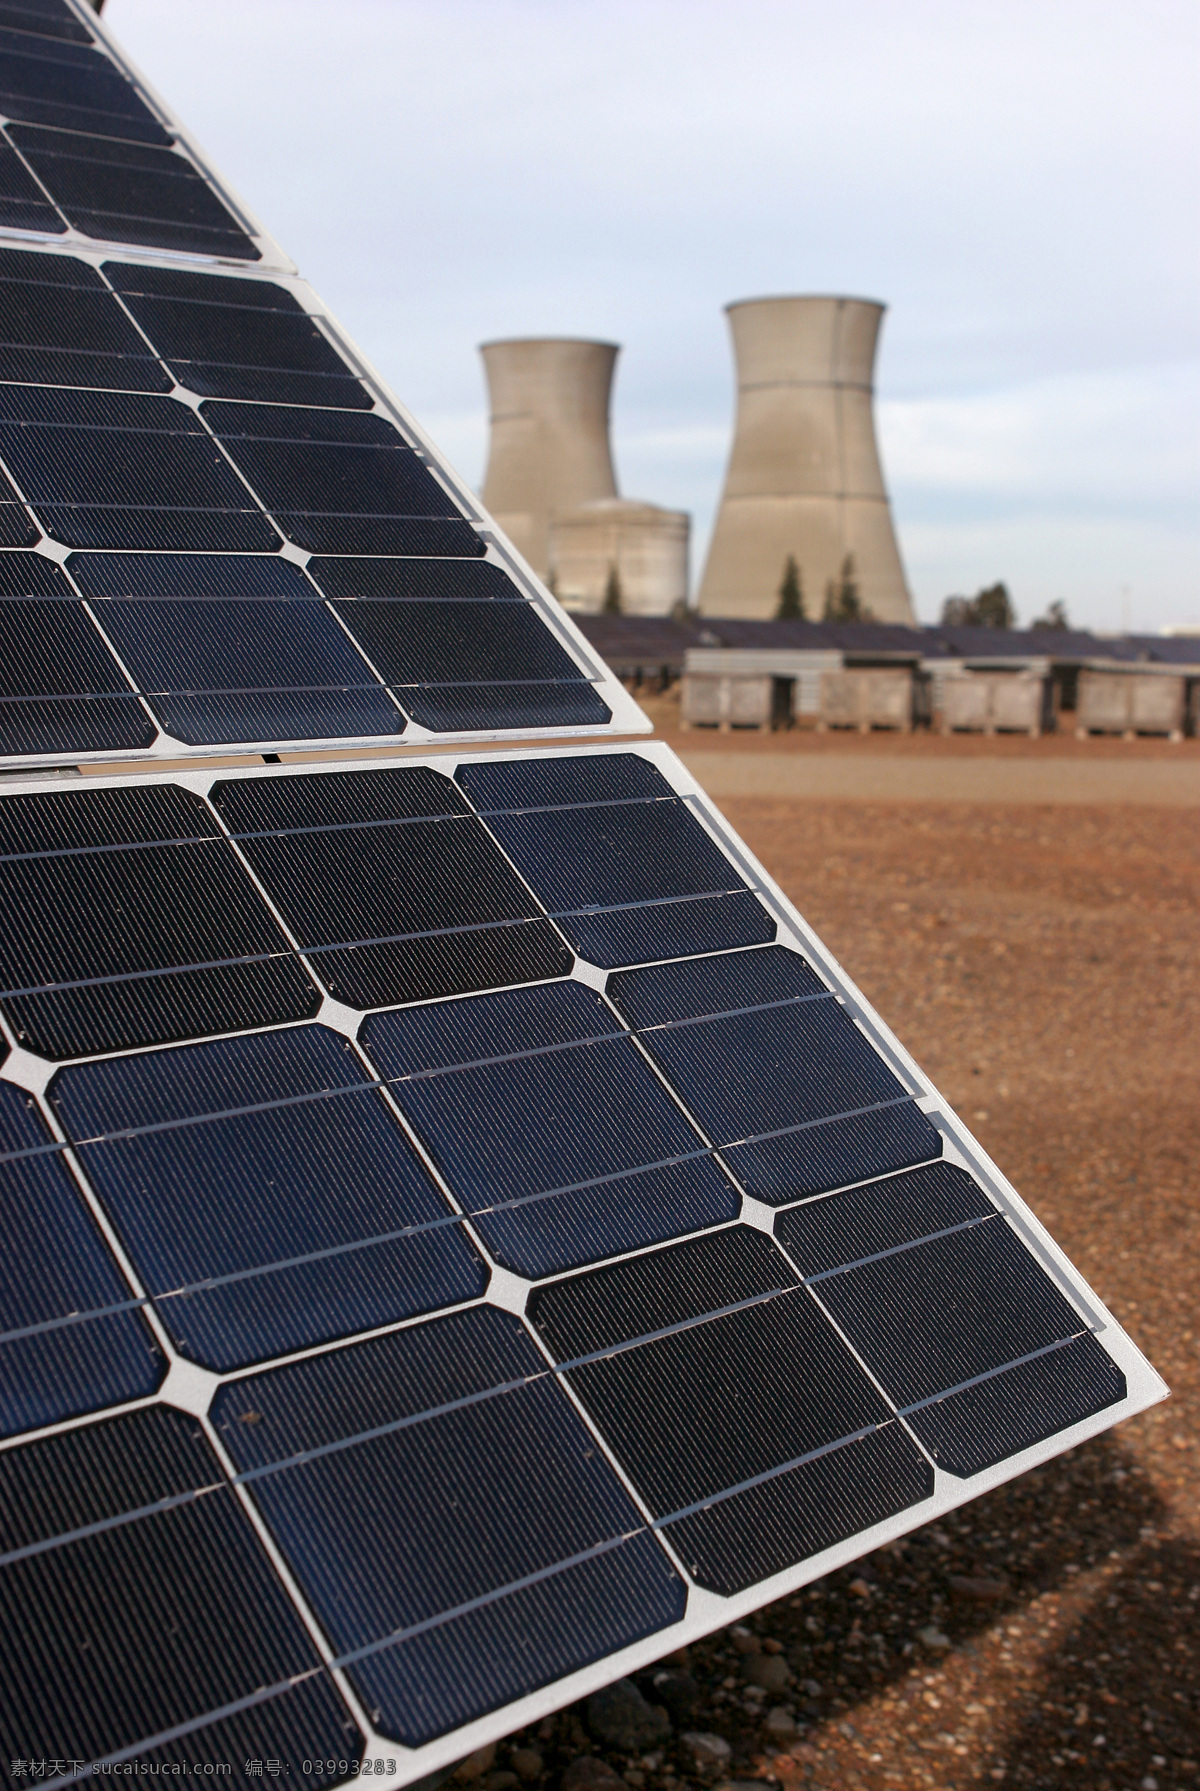 白云 草原 低碳 电力 发电 工业生产 光伏 环保 太阳能发电 太阳能 蓝天 新能源 节约 现代科技 矢量图 日常生活